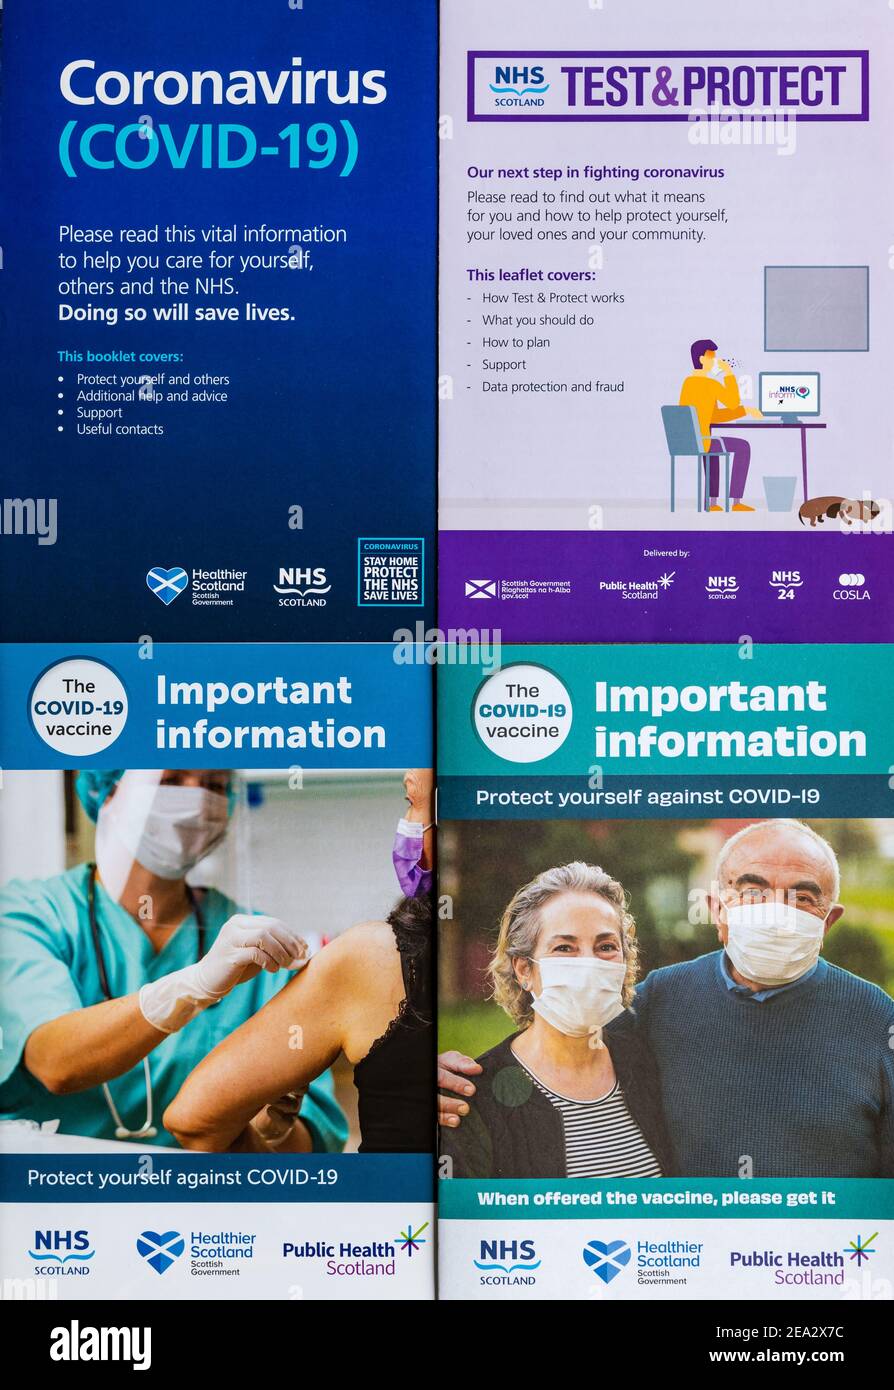 Folletos de asesoramiento del Reino Unido y el Gobierno escocés durante la pandemia del coronavirus Covid-19, Escocia, Reino Unido Foto de stock